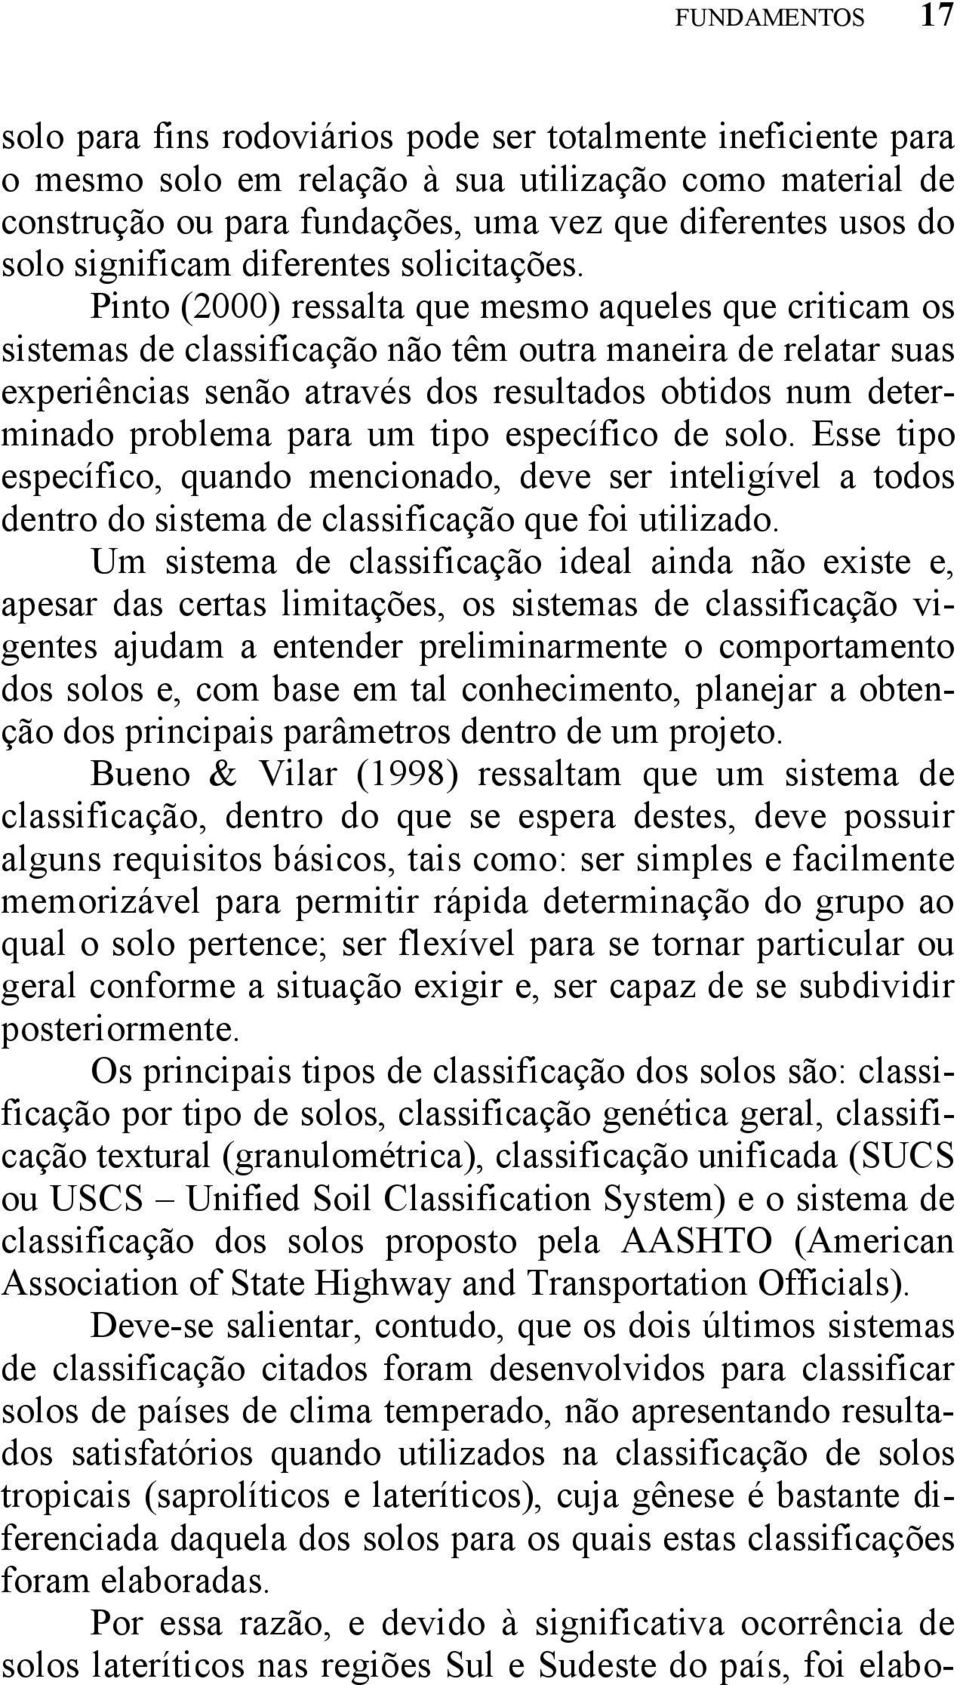 Pinto (2000) ressalta que mesmo aqueles que criticam os sistemas de classificação não têm outra maneira de relatar suas experiências senão através dos resultados obtidos num determinado problema para